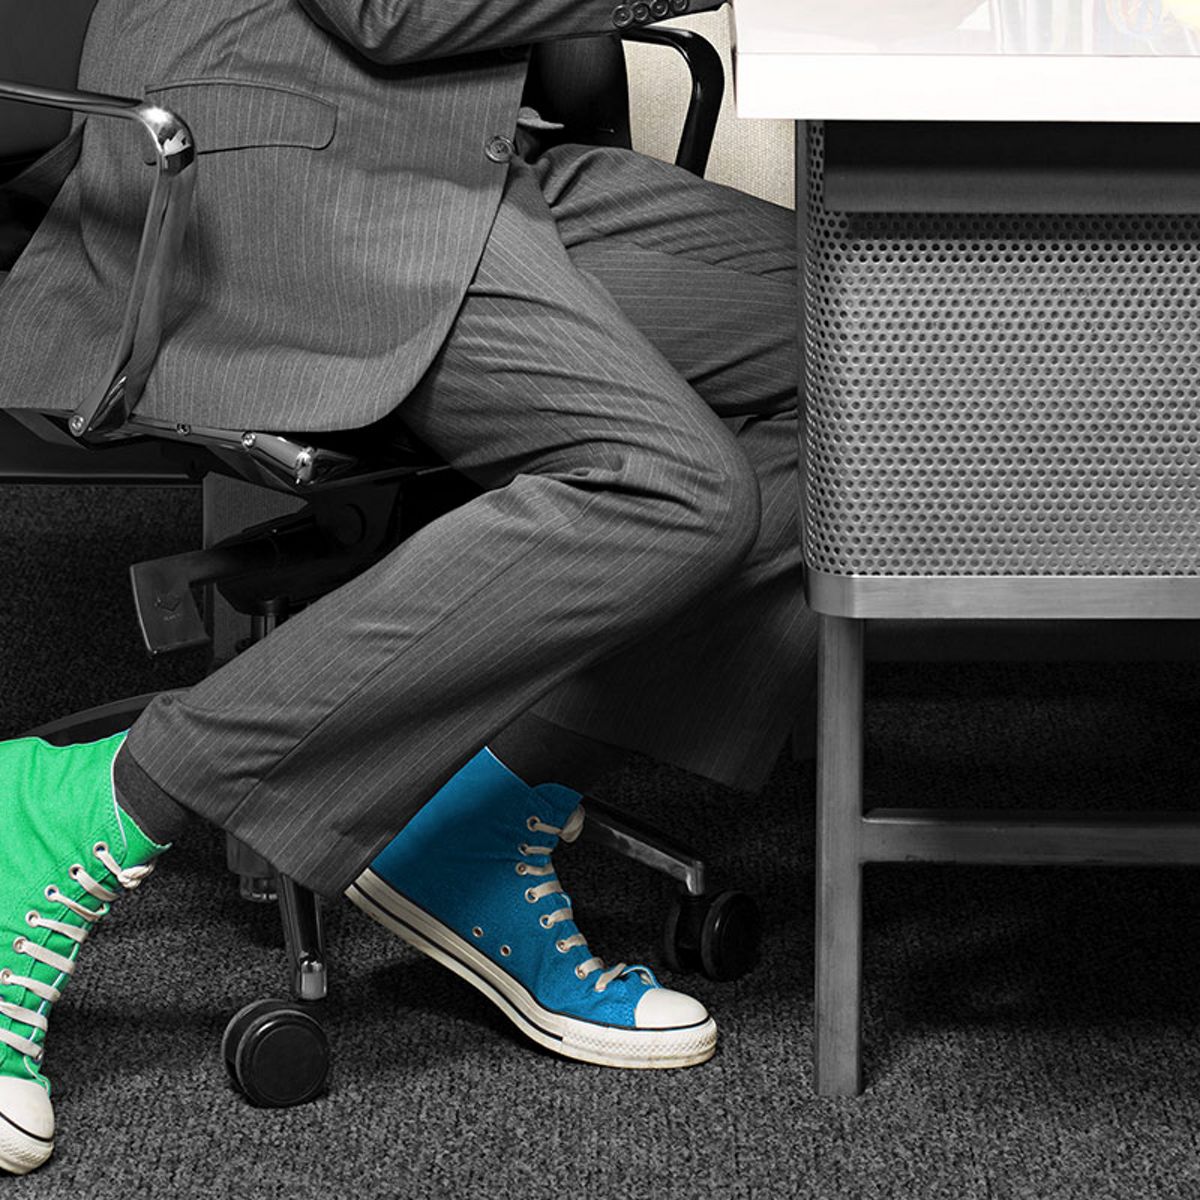 Une personne assise avec deux chaussures de couleur